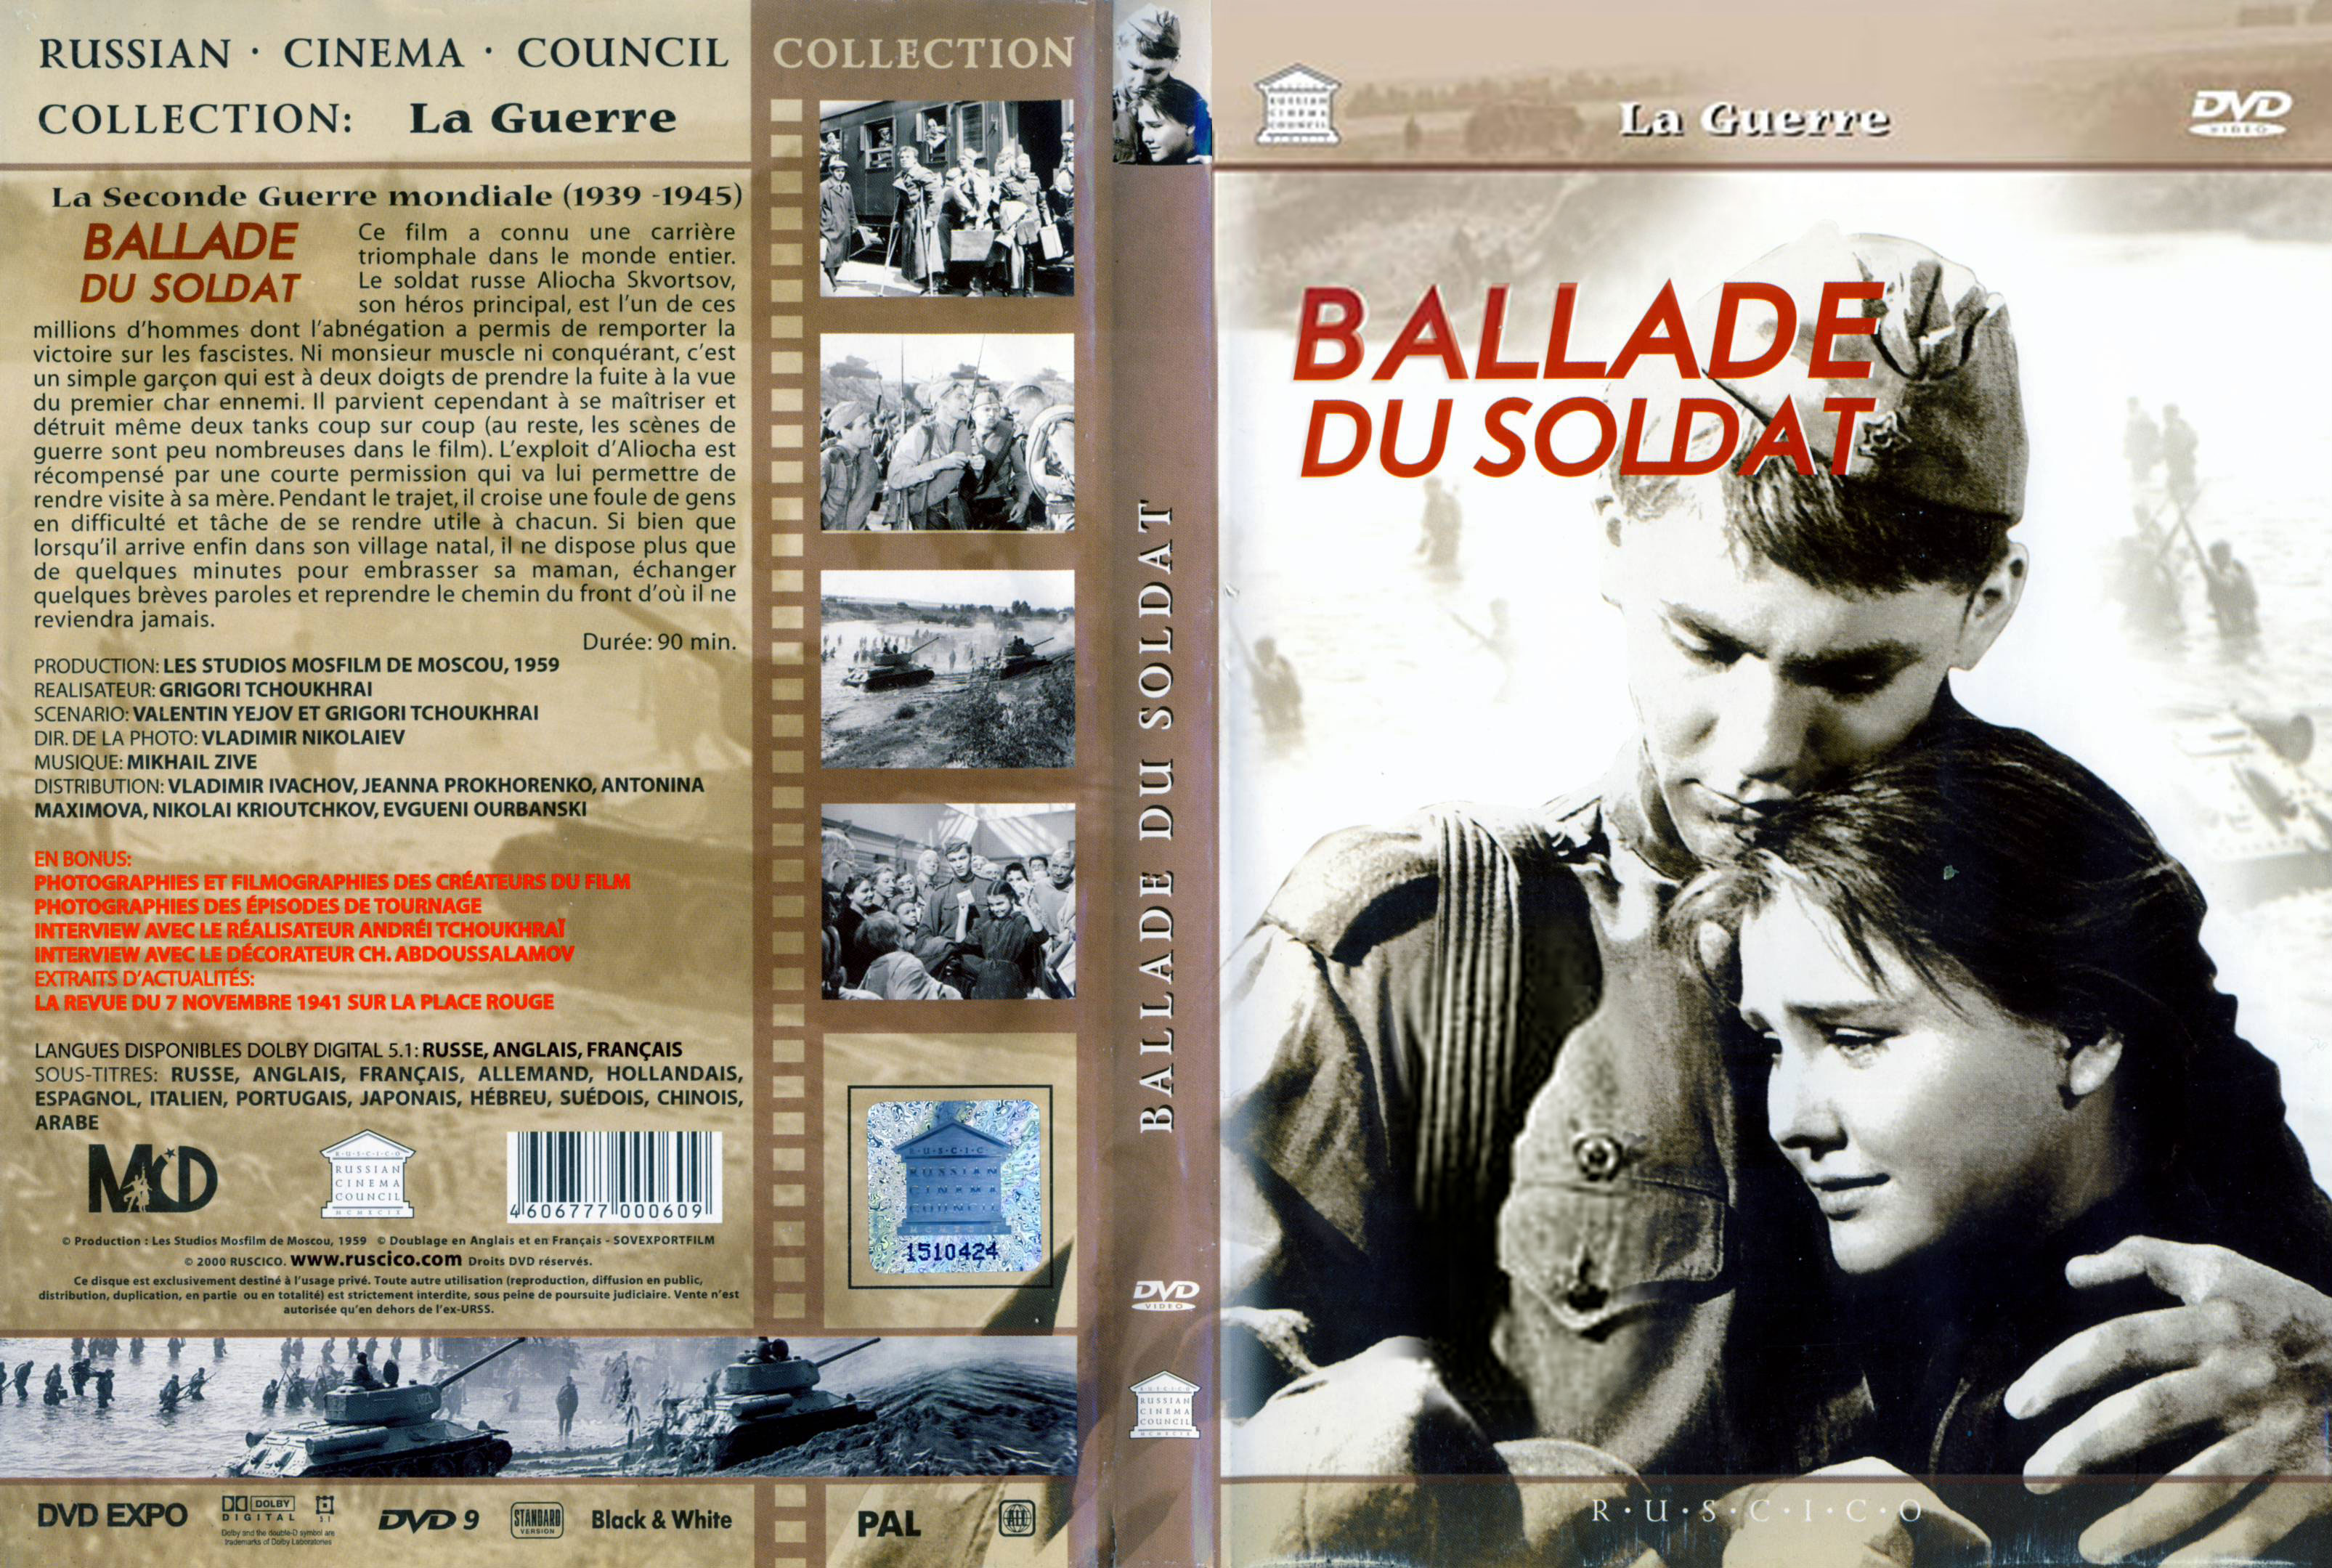 Jaquette DVD Ballade du soldat